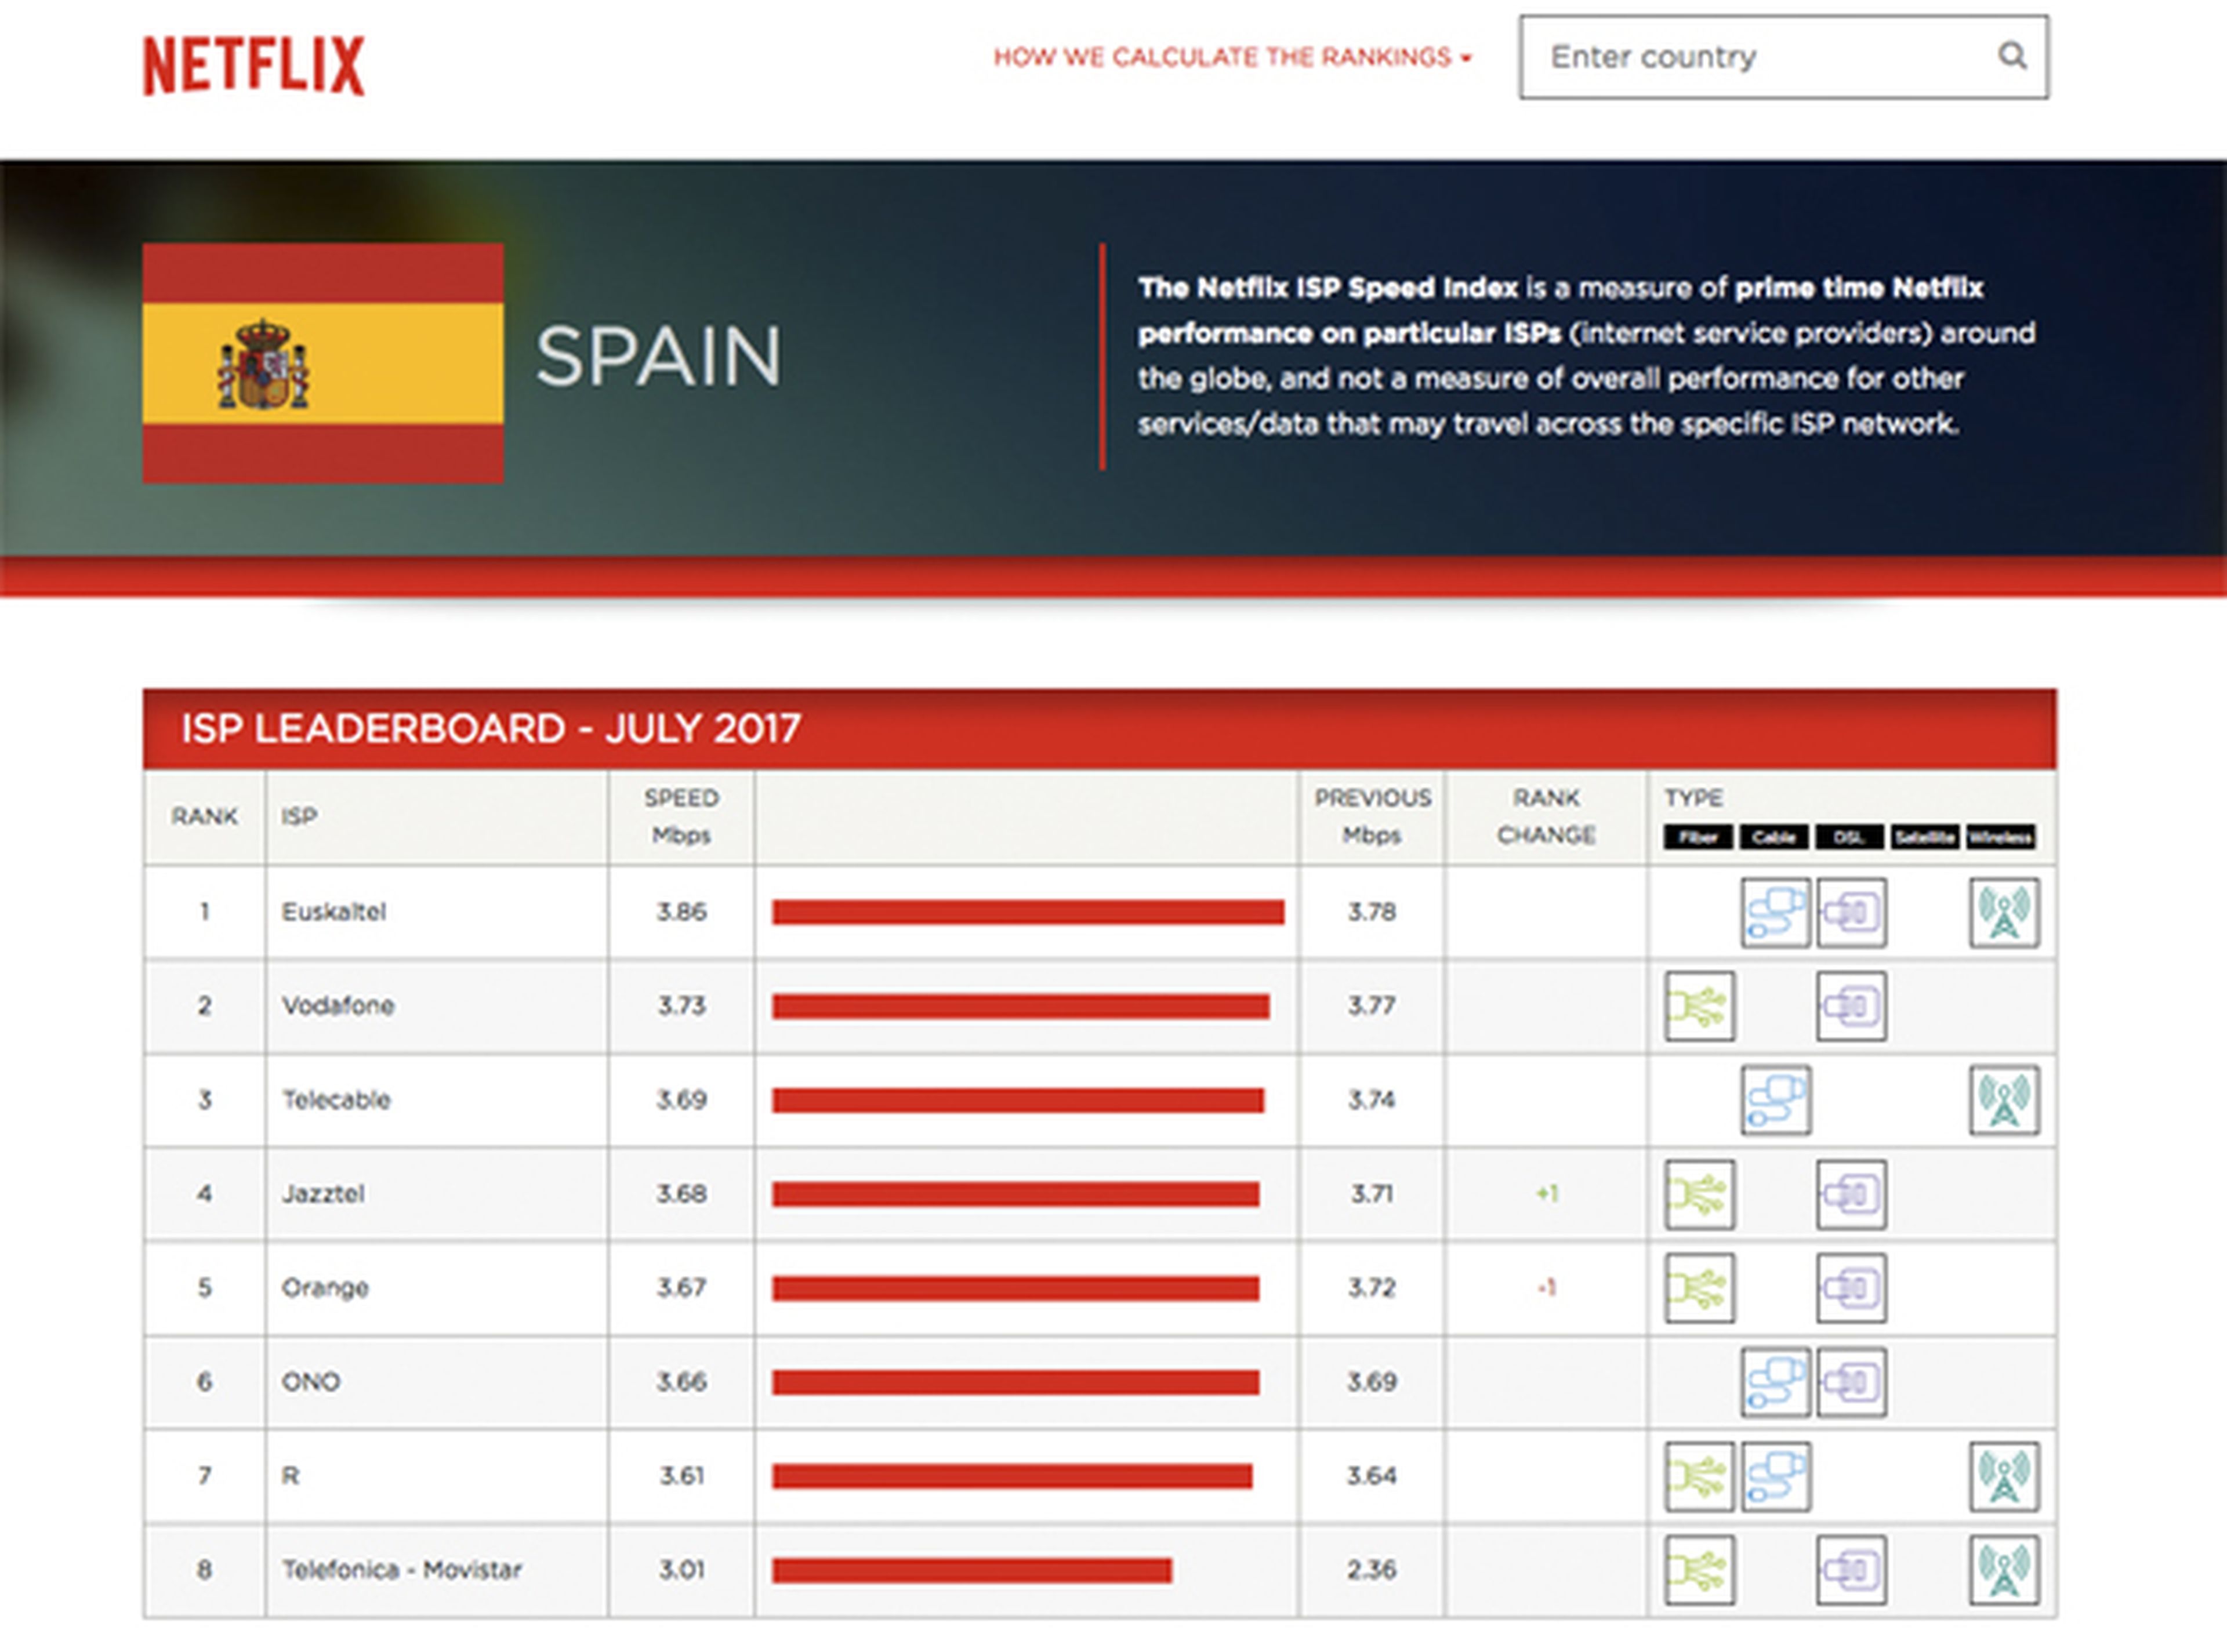 Las velocidades de Netflix en España en julio